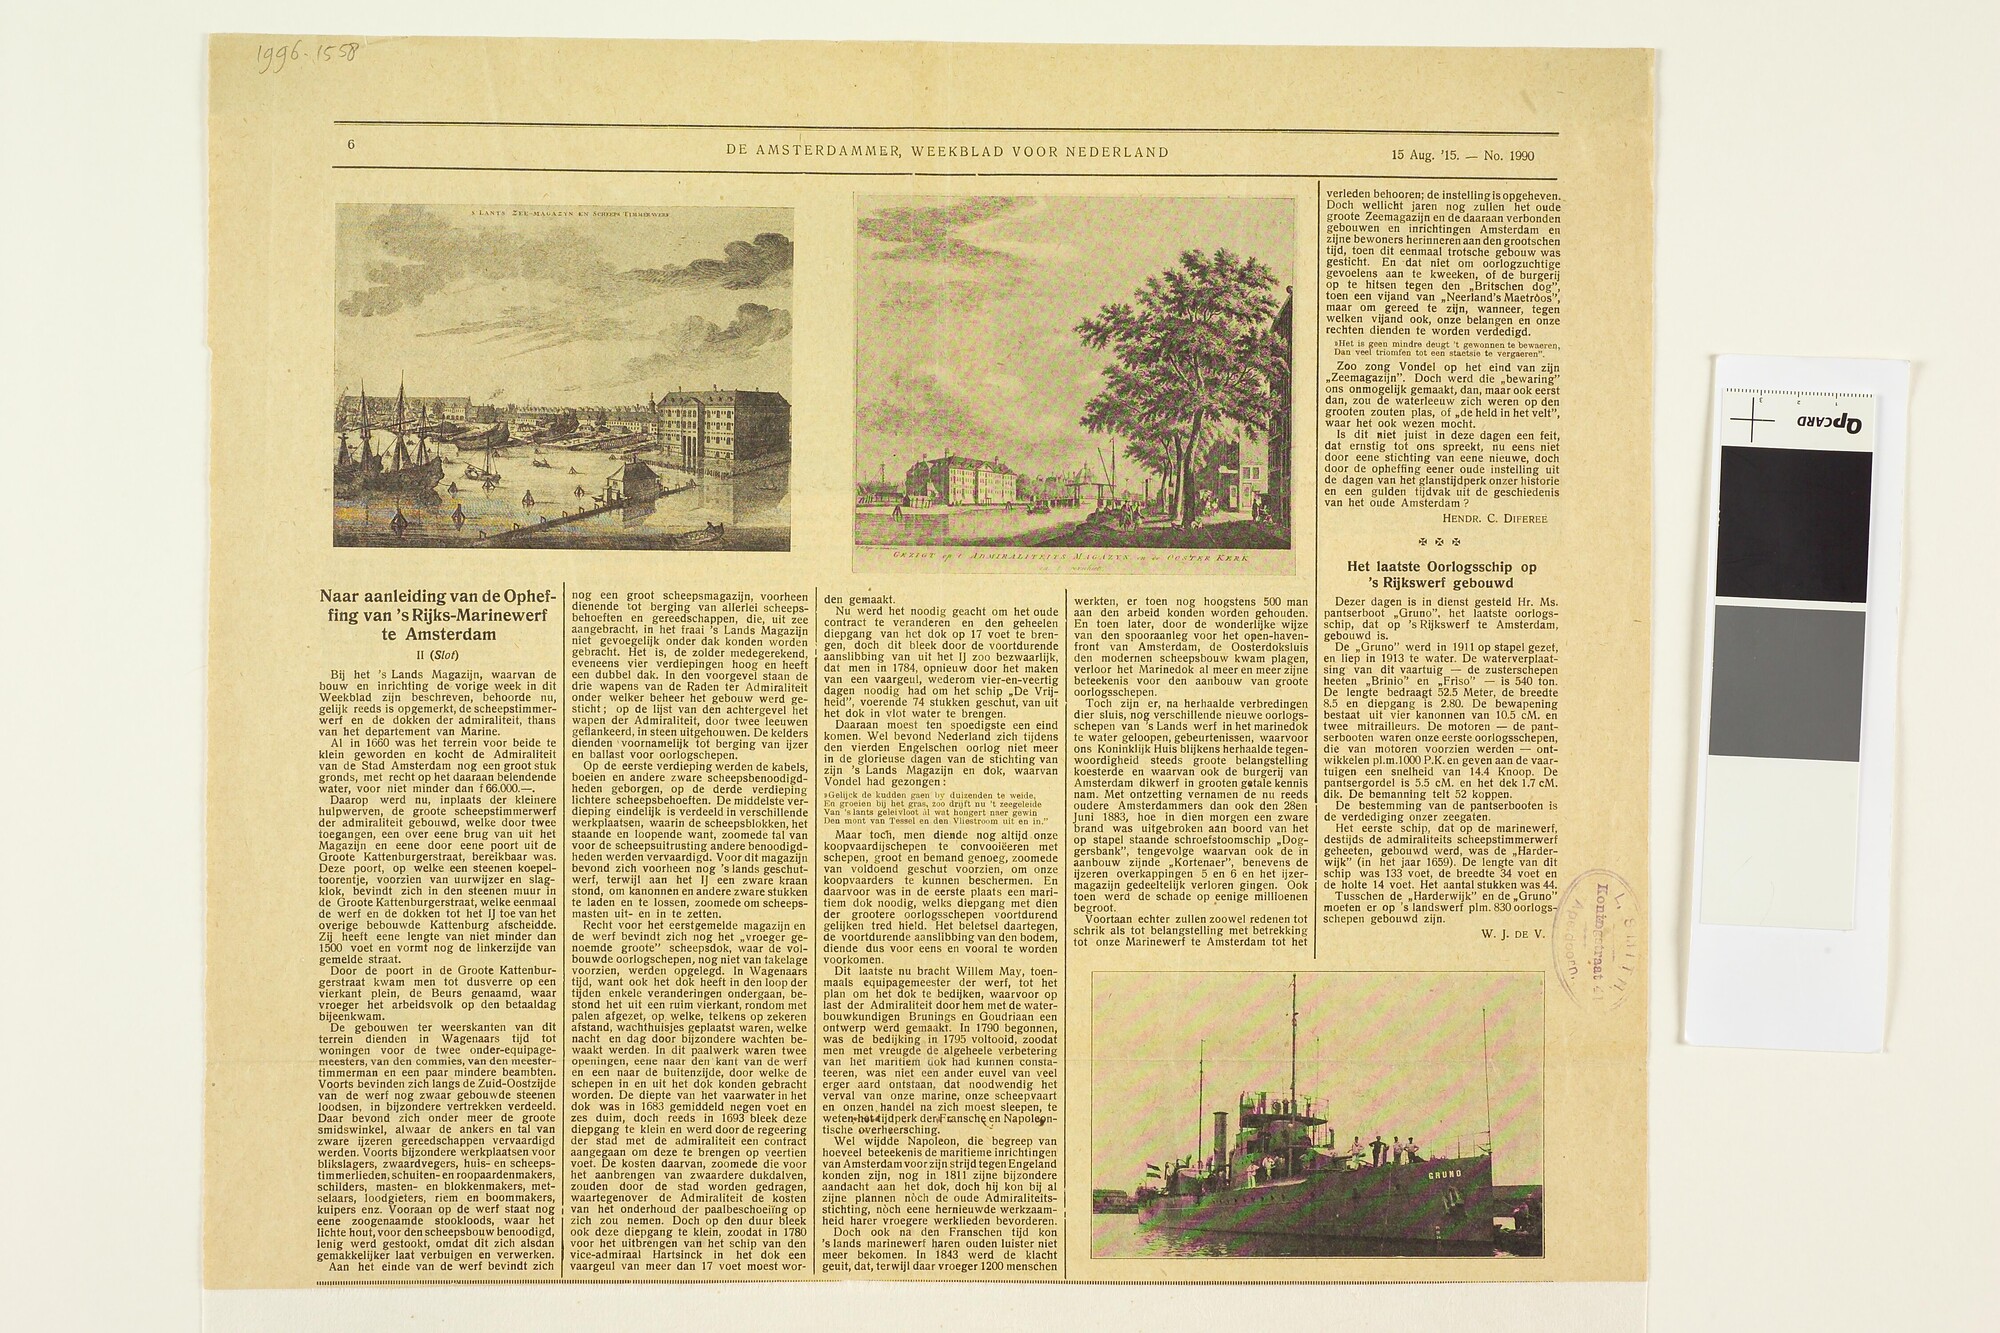 1996.1558; Artikel uit het weekblad De Amsterdammer over de geschiedenis van de Rijkswerf te Amsterdam; krantenknipsel